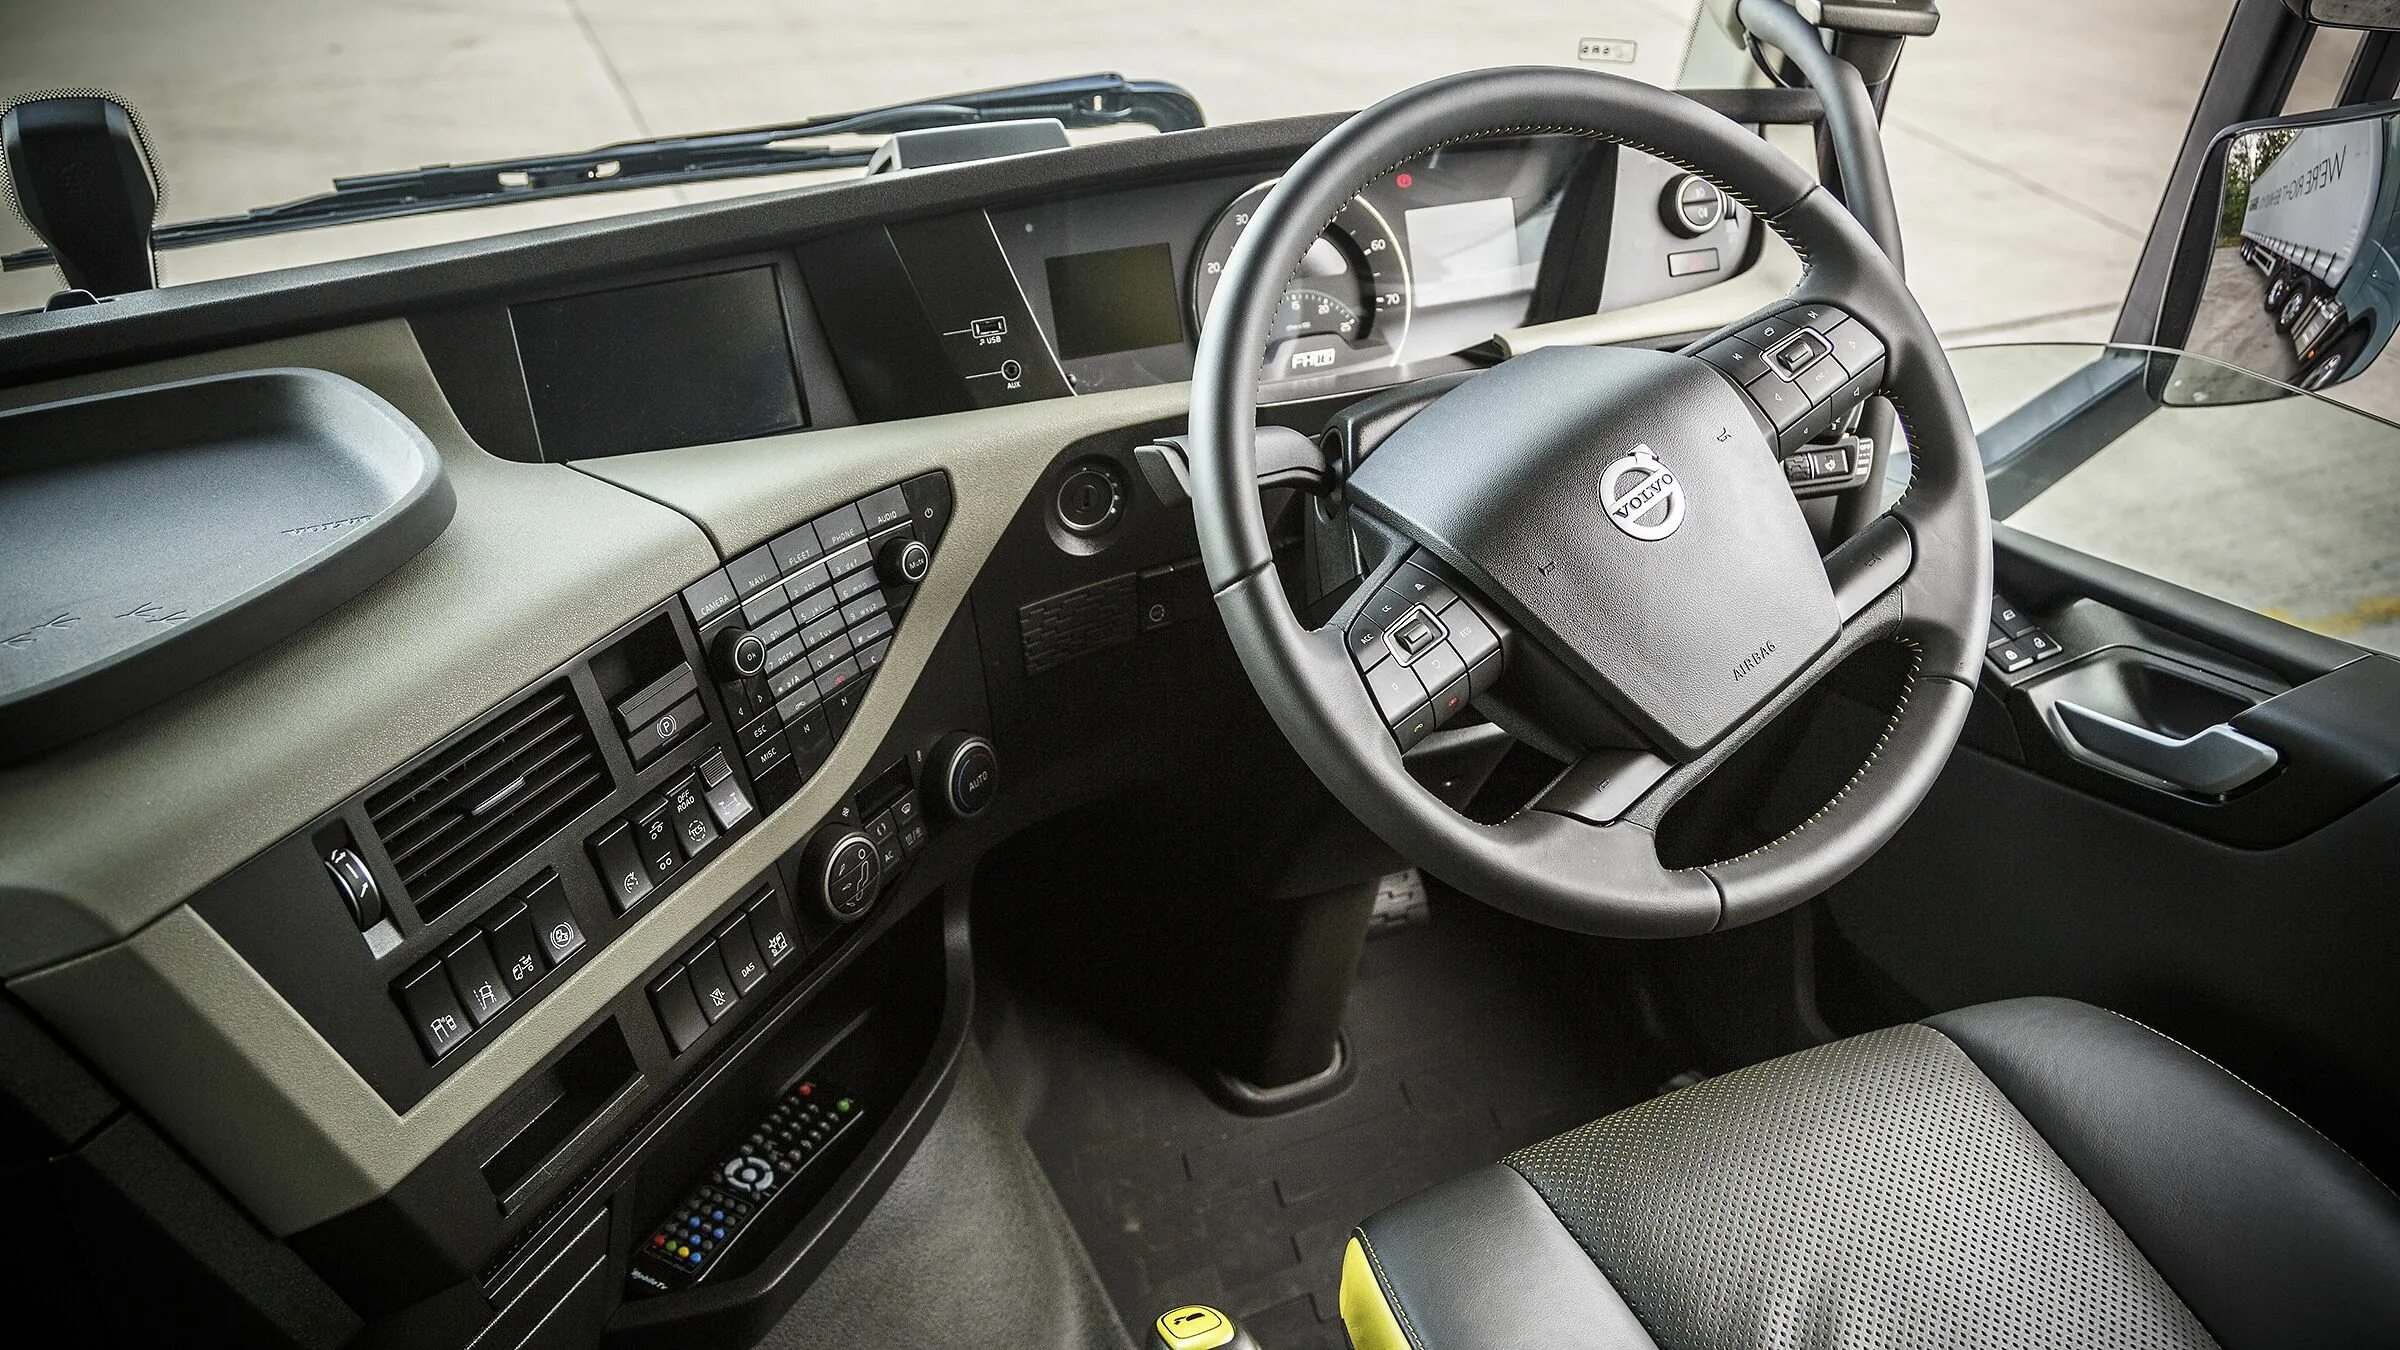 Volvo fh салон. Volvo FH 750 салон. Volvo FH 2015 салон. Volvo fh16 750 Interior. Volvo fh16 750 кабина.